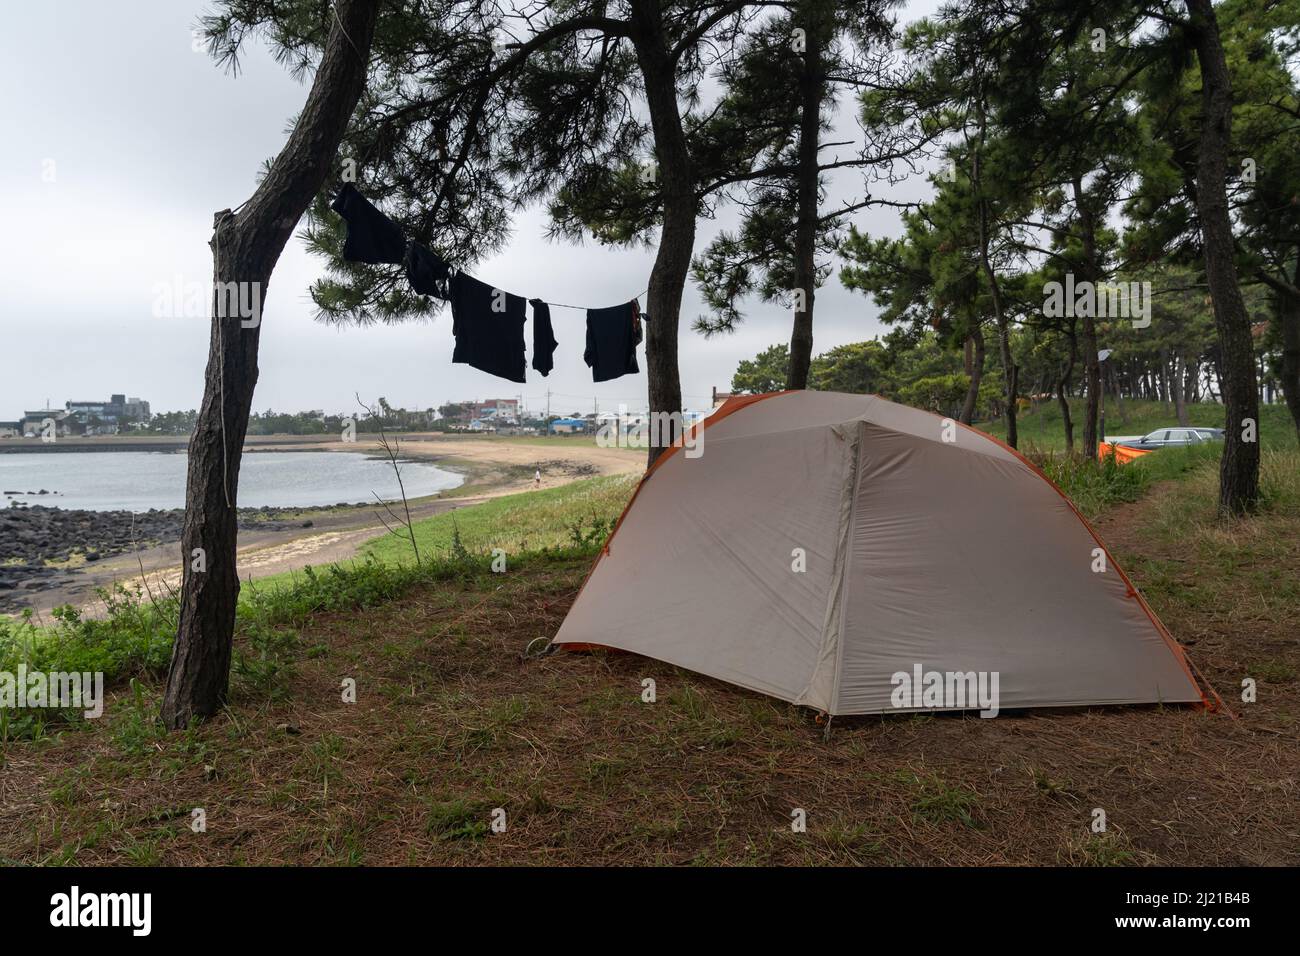 Ein Zelt, das in einem Pinienwald mit Blick auf den geschwungenen Hamo-Strand aufgestellt ist, mit Wäsche, die zum Trocknen zwischen den Bäumen aufgereiht wurde. Olle Trail Route 10, Südkorea. Stockfoto